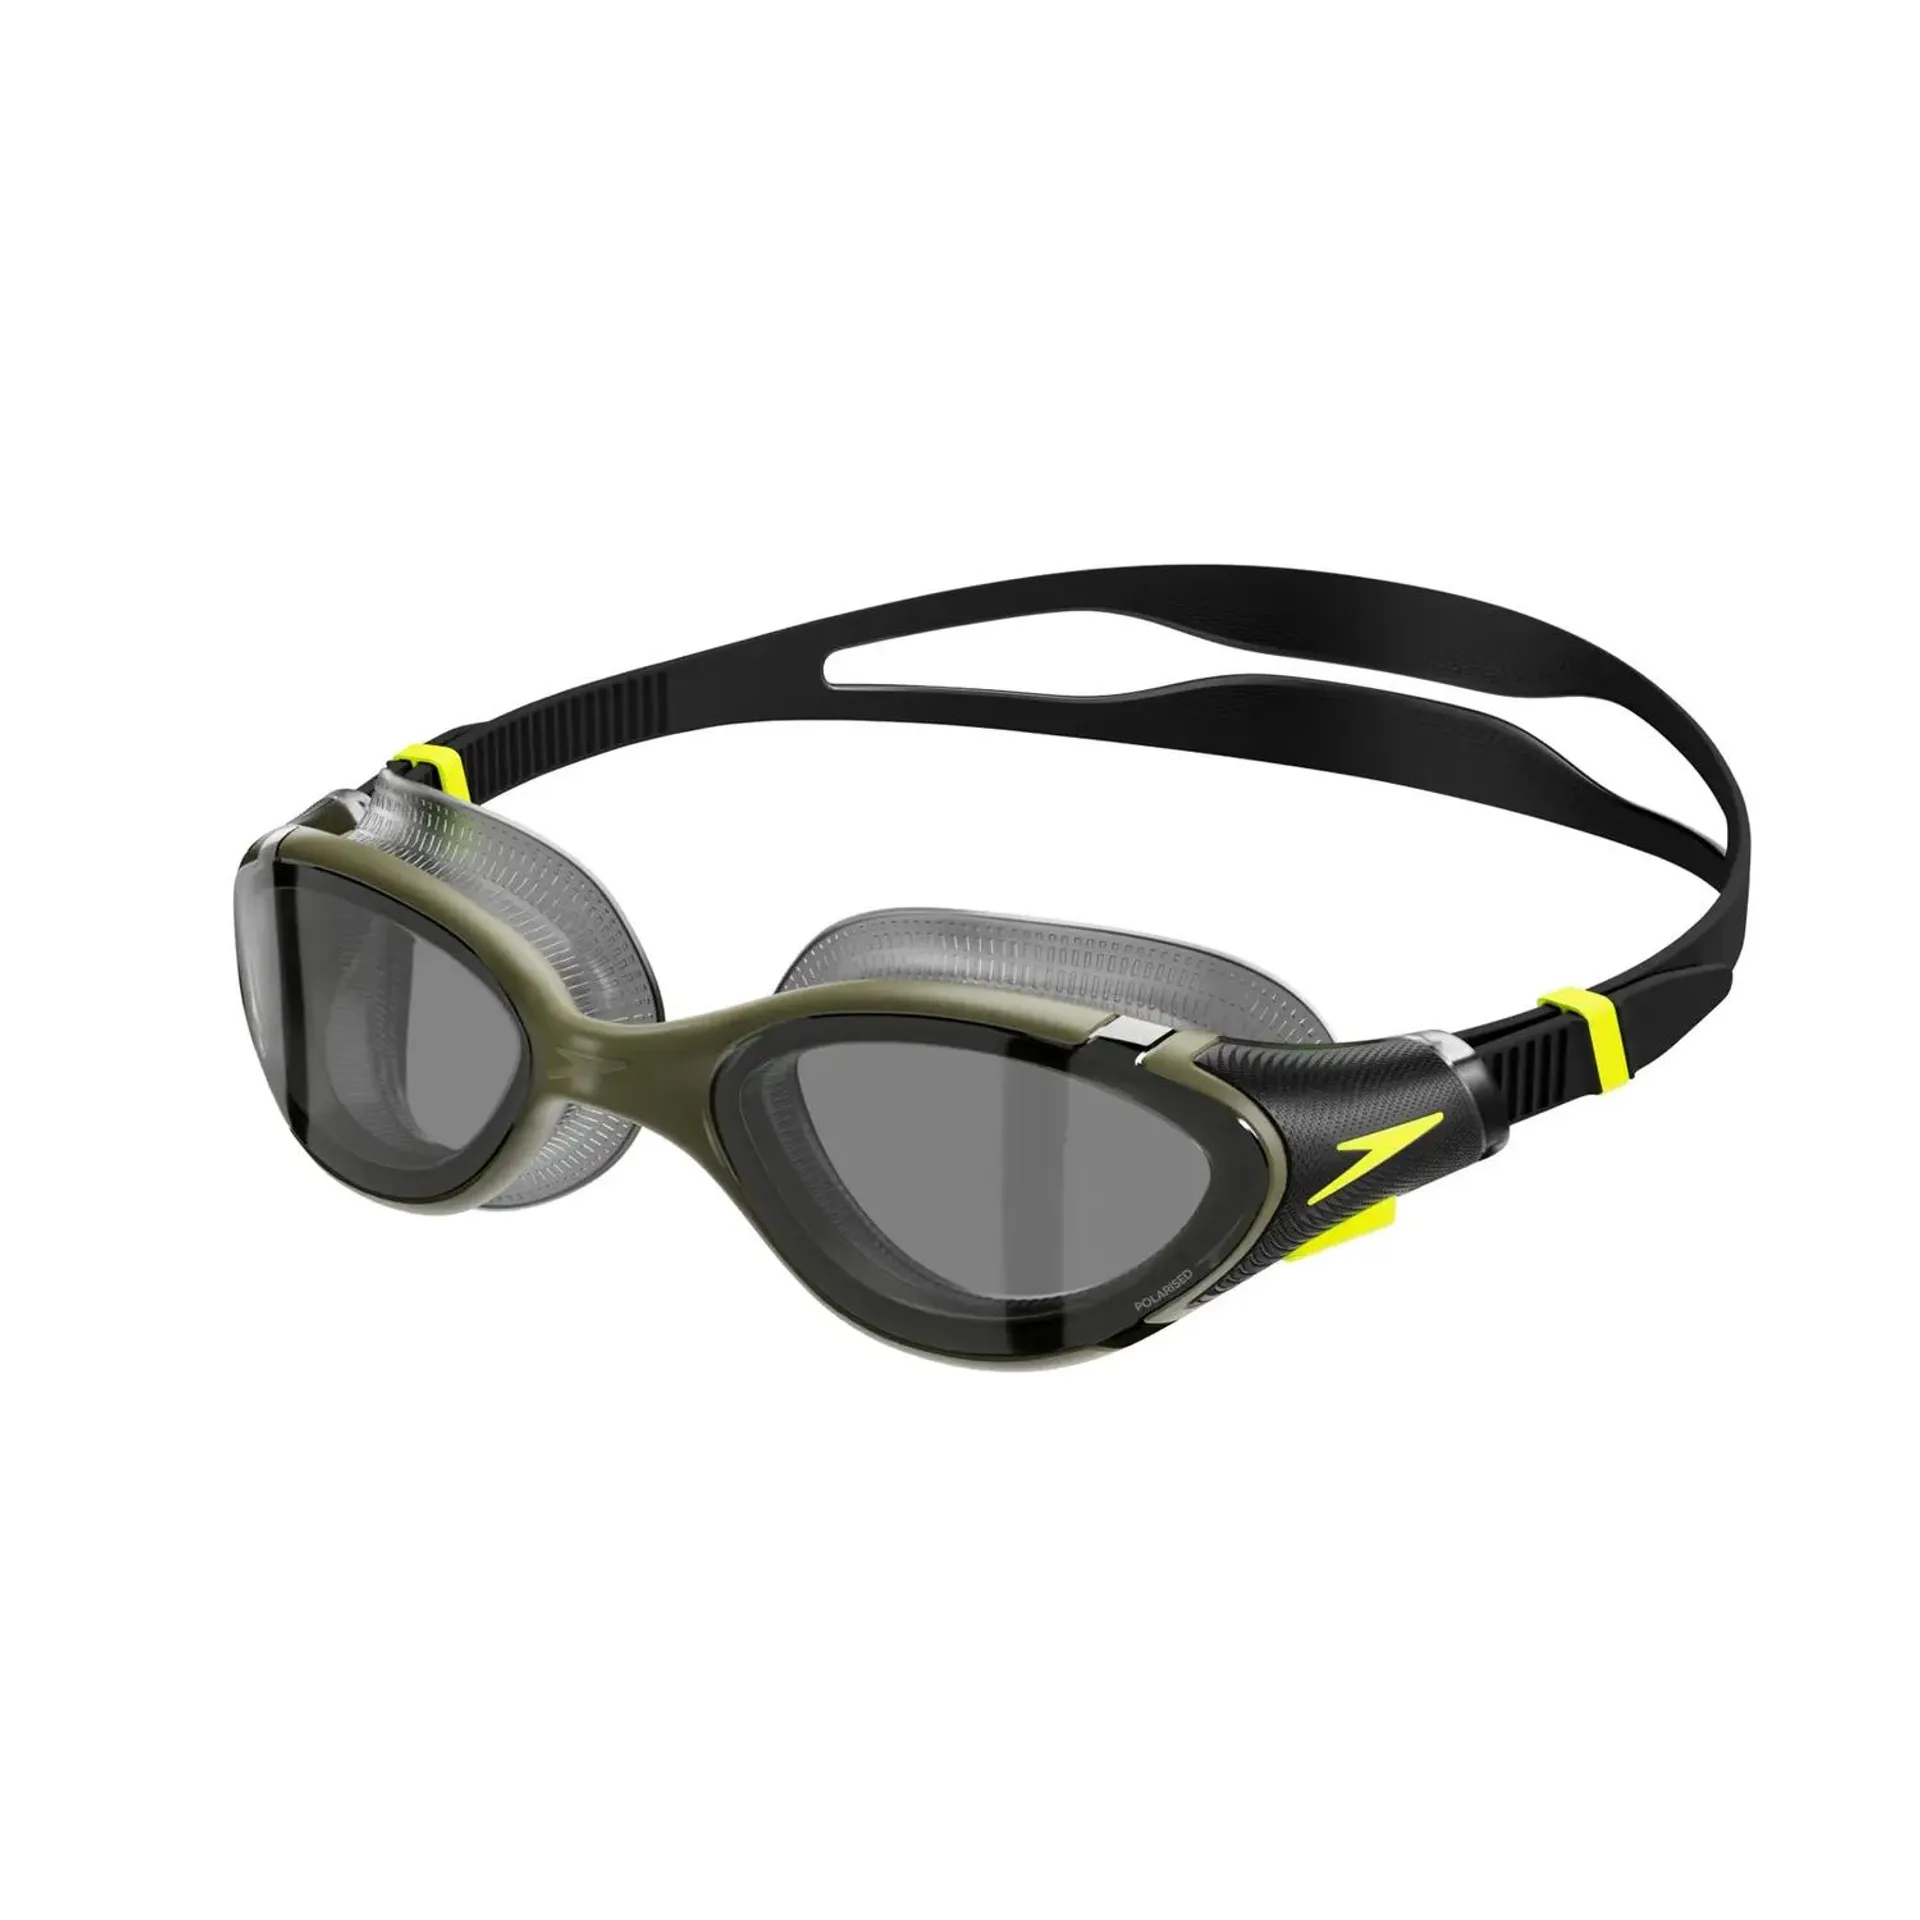 Gafas de natación polarizadas Biofuse 2.0 para adultos, verde oscuro/amarillo